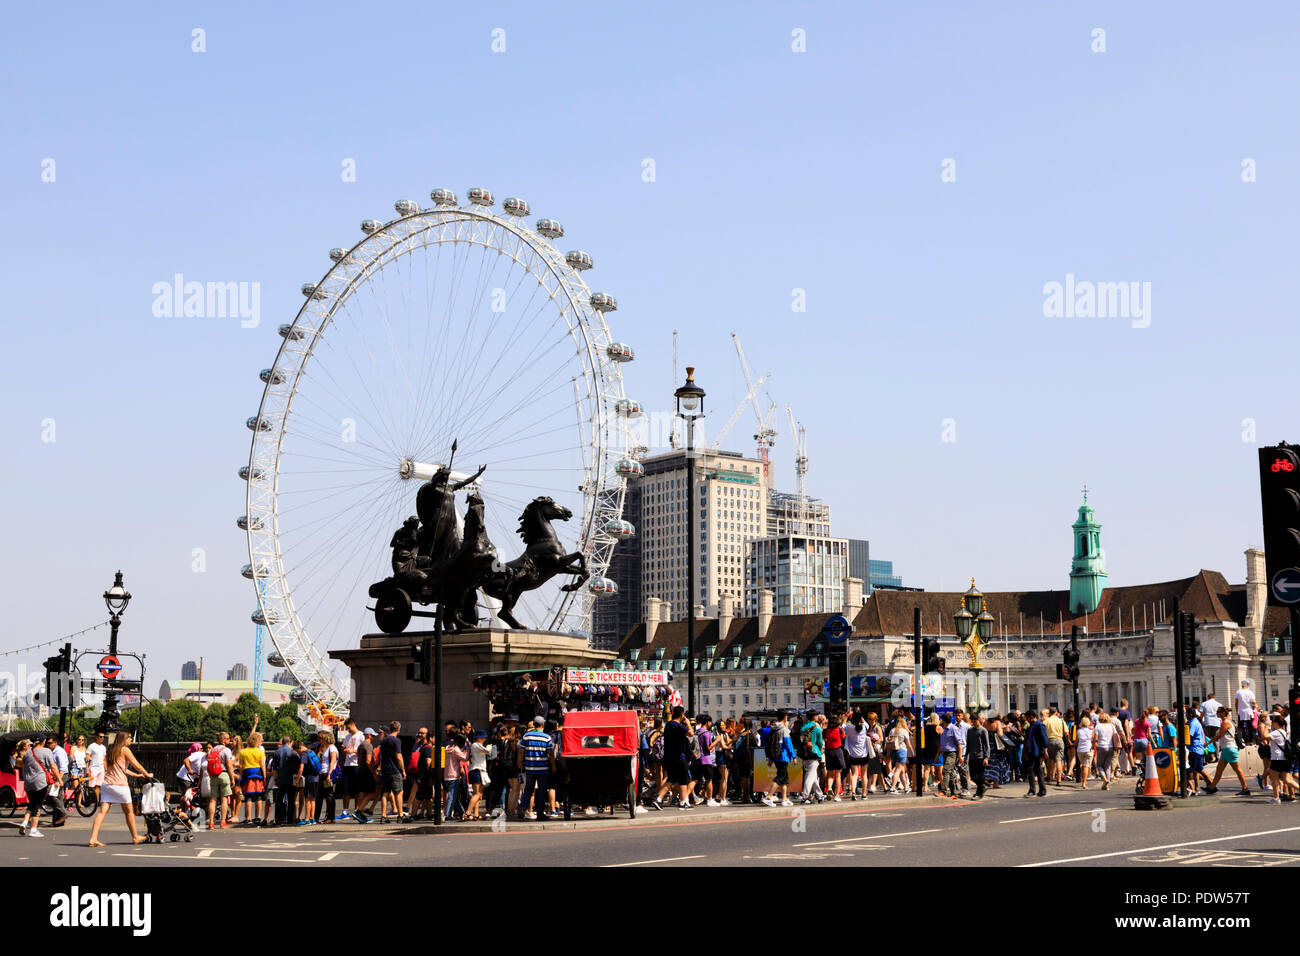 Folle turistiche sul Westminster Bridge con la Coca-Cola London Eye ruota panoramica sulla riva sud del Tamigi, Lambeth, Londra, Inghilterra Foto Stock